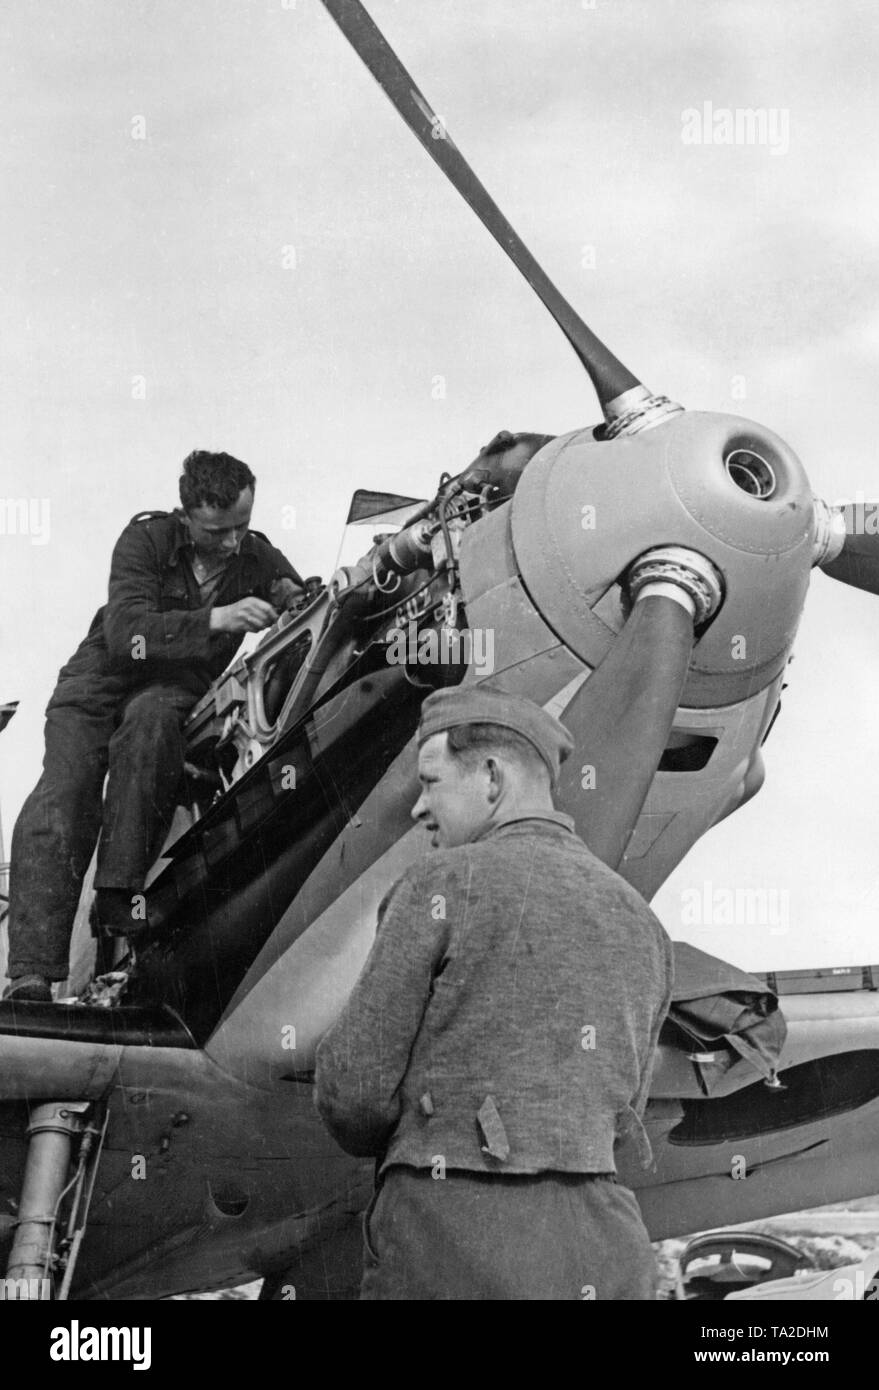 Photo de deux mécaniciens de la Luftwaffe pendant la réparation du moteur d'un Messerschmitt Bf 109 B-series à un aérodrome en Espagne. Ici, le canon de la mitrailleuse dans le creux du nez de l'hélice. Banque D'Images